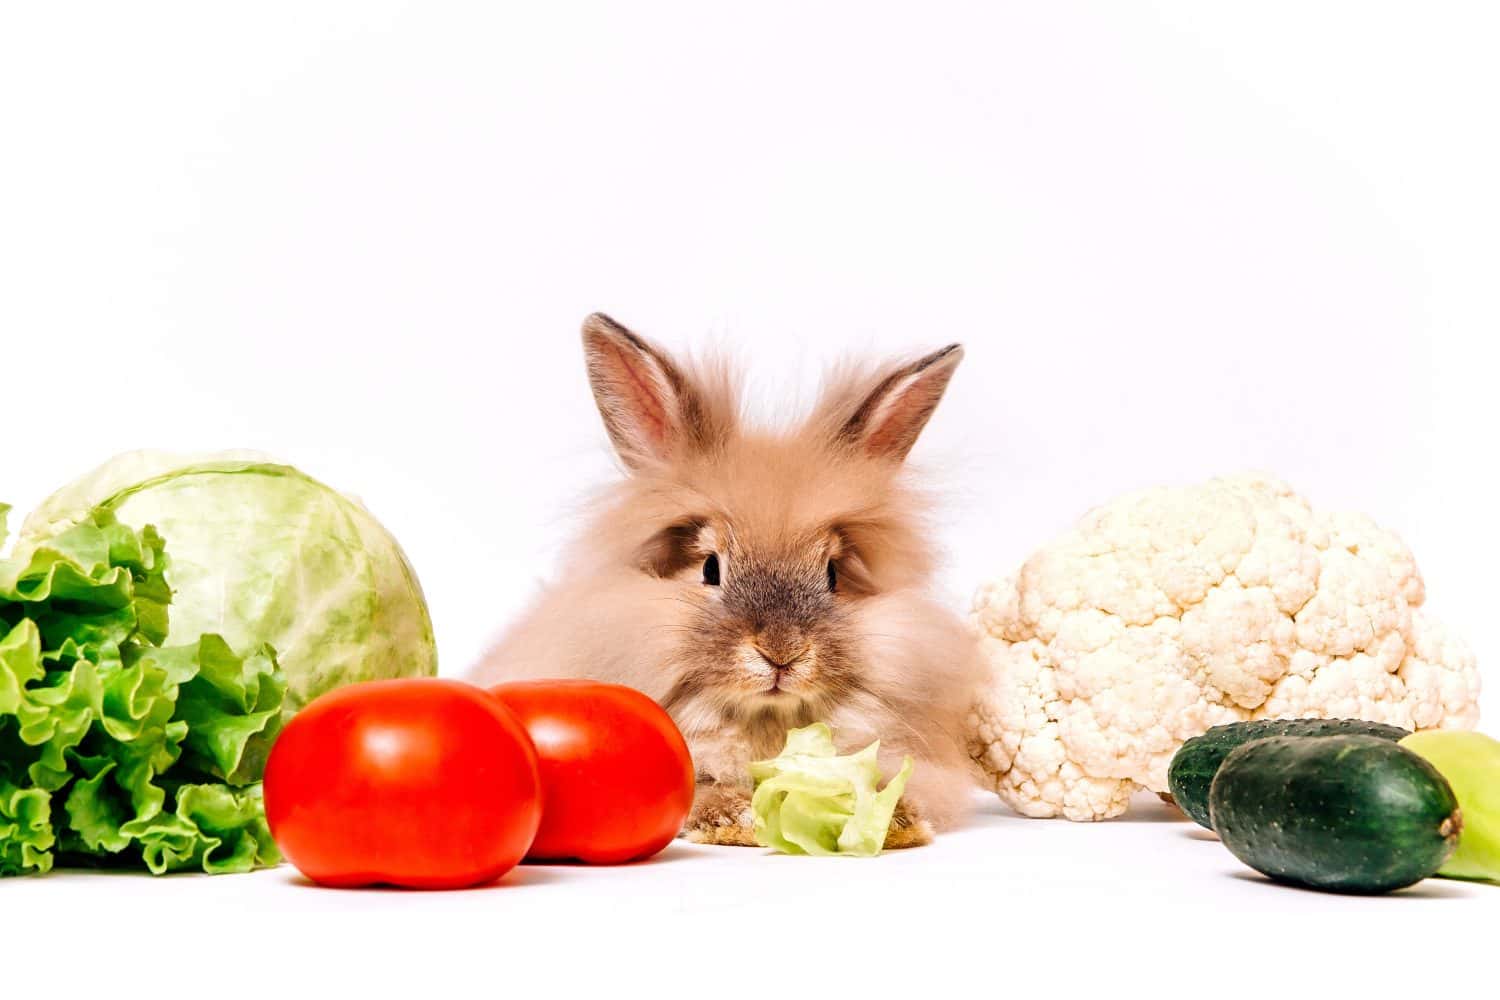 Un coniglietto rosso è seduto tra le verdure.  Il concetto di alimentazione sana.  Cibo sano per lepri.  Alimenti che il coniglio mangia cavolfiore, lattuga, pomodoro e cetriolo